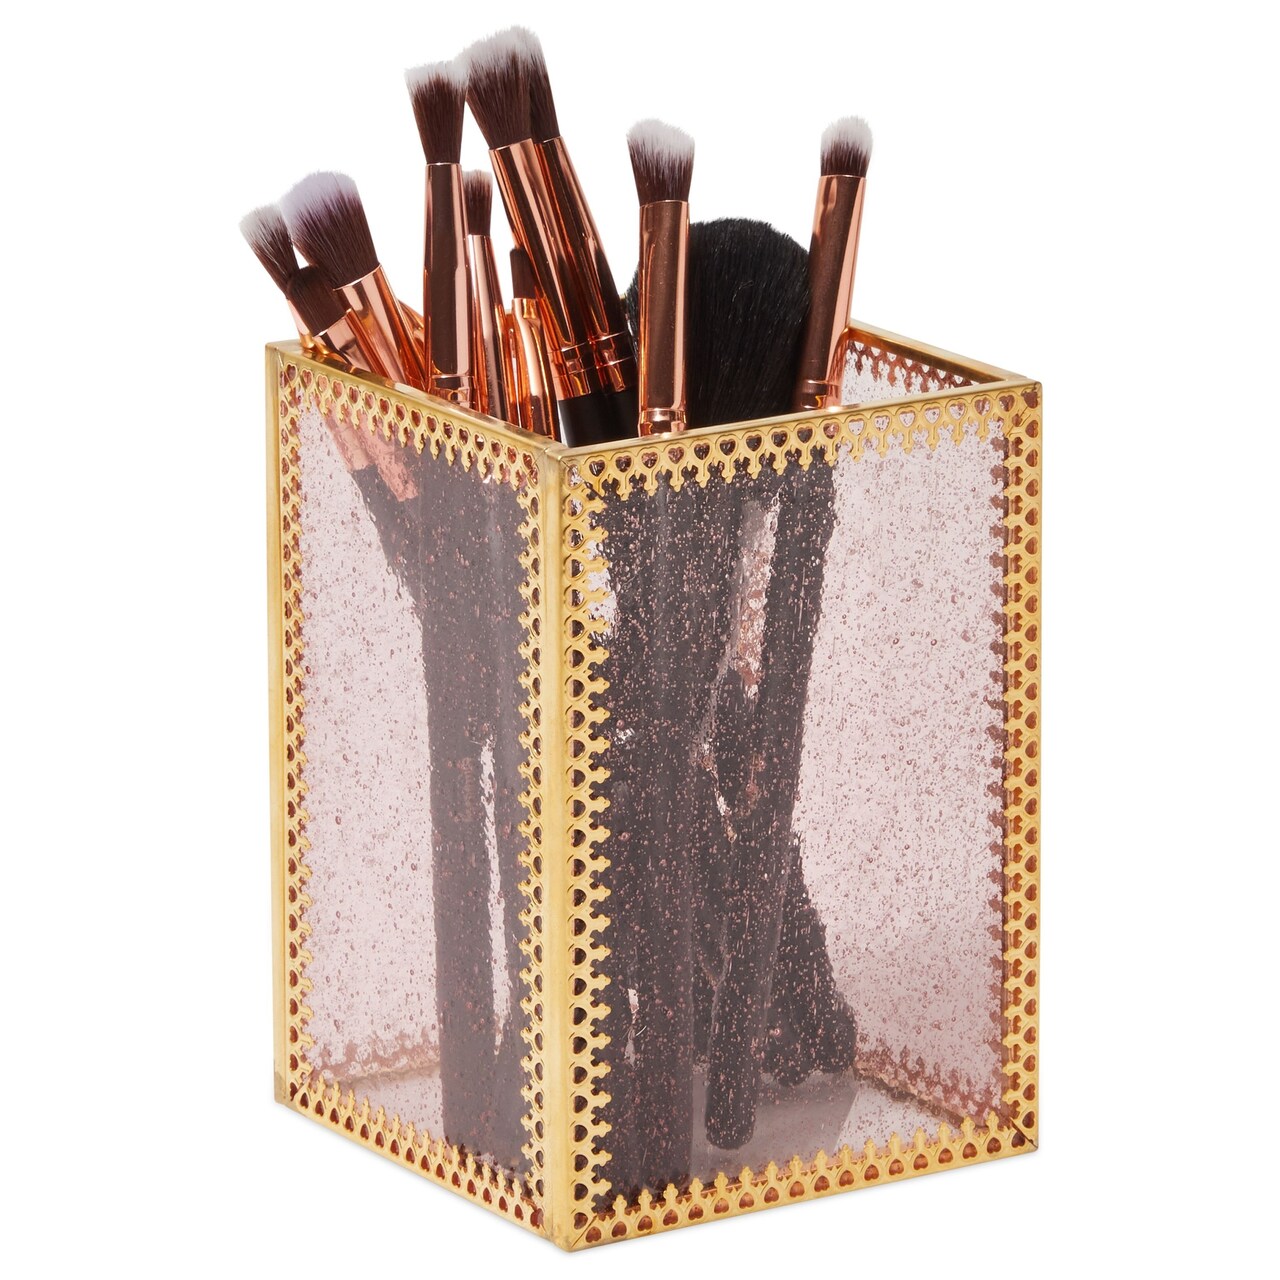 Gold Makeup Brush Holder For Vanity